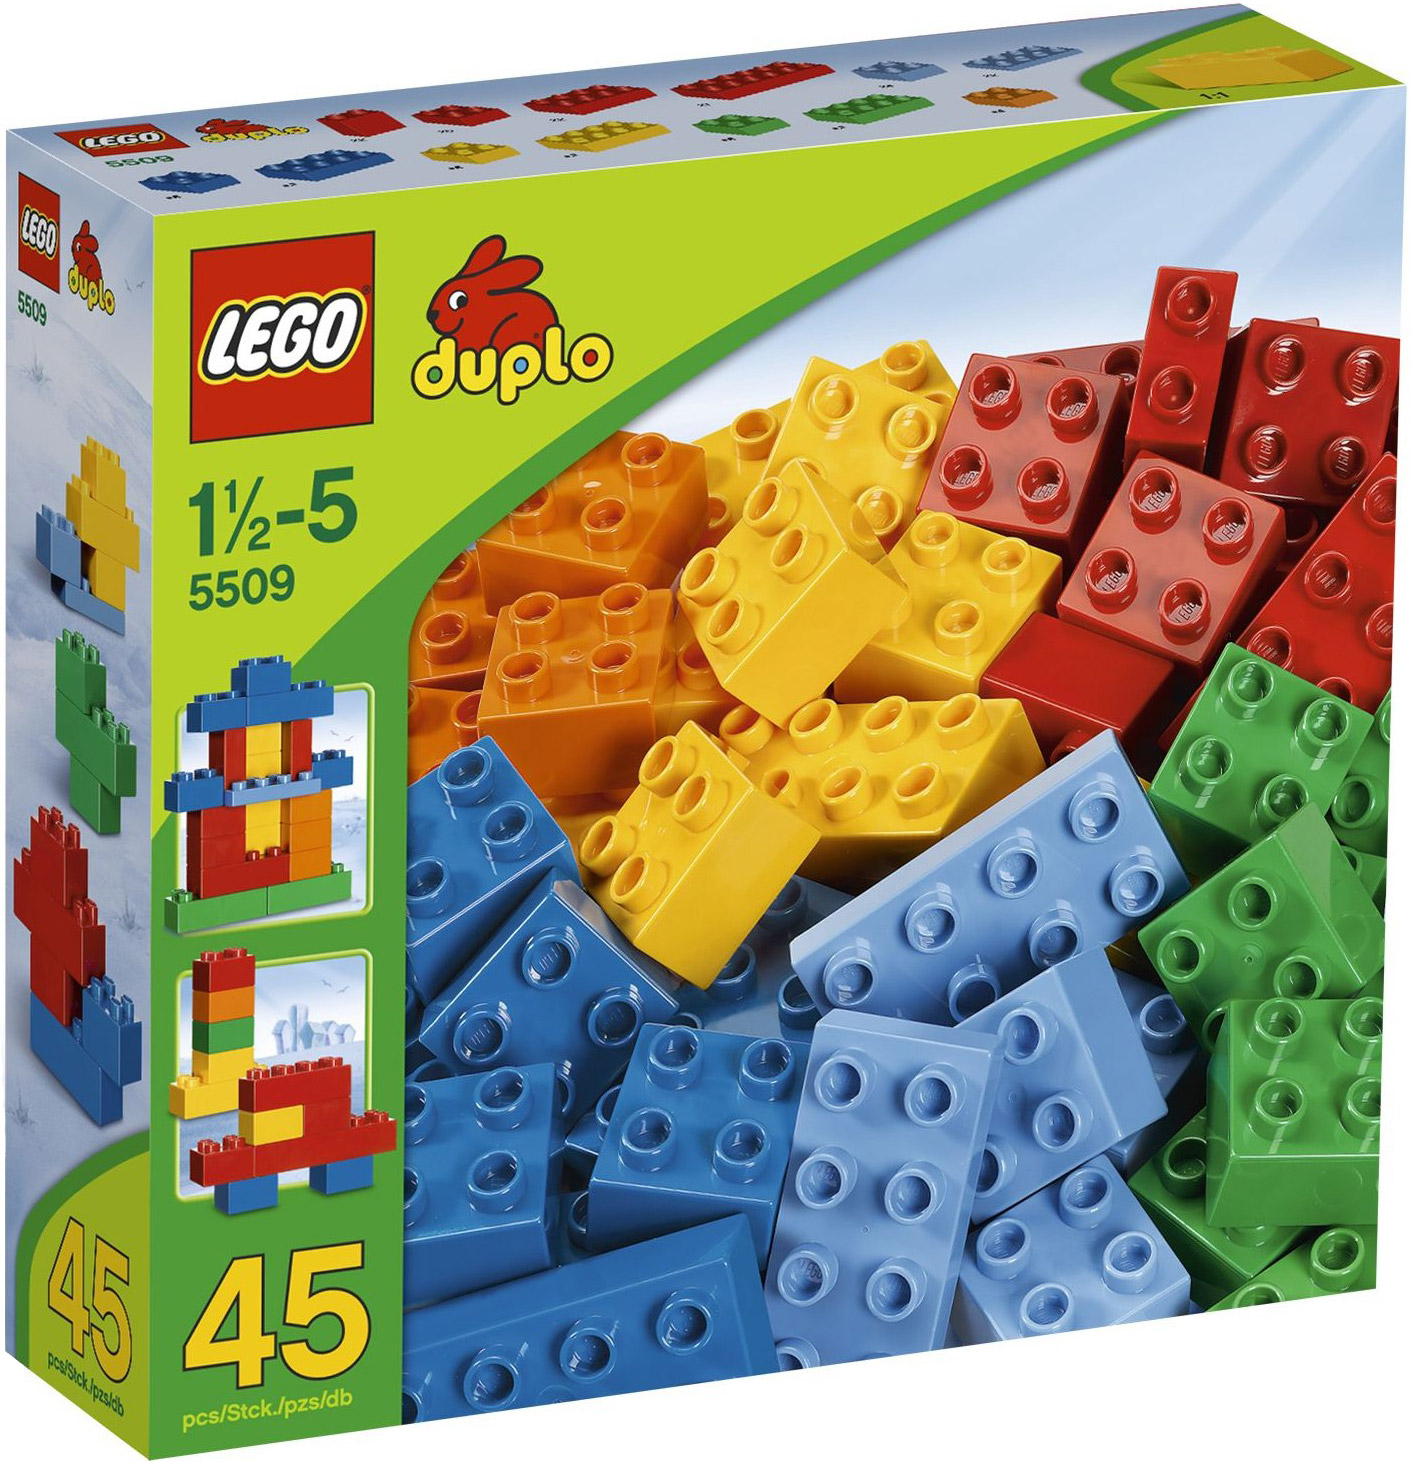 LEGO Duplo 5509 pas cher, Boîte de complément 6 Couleurs